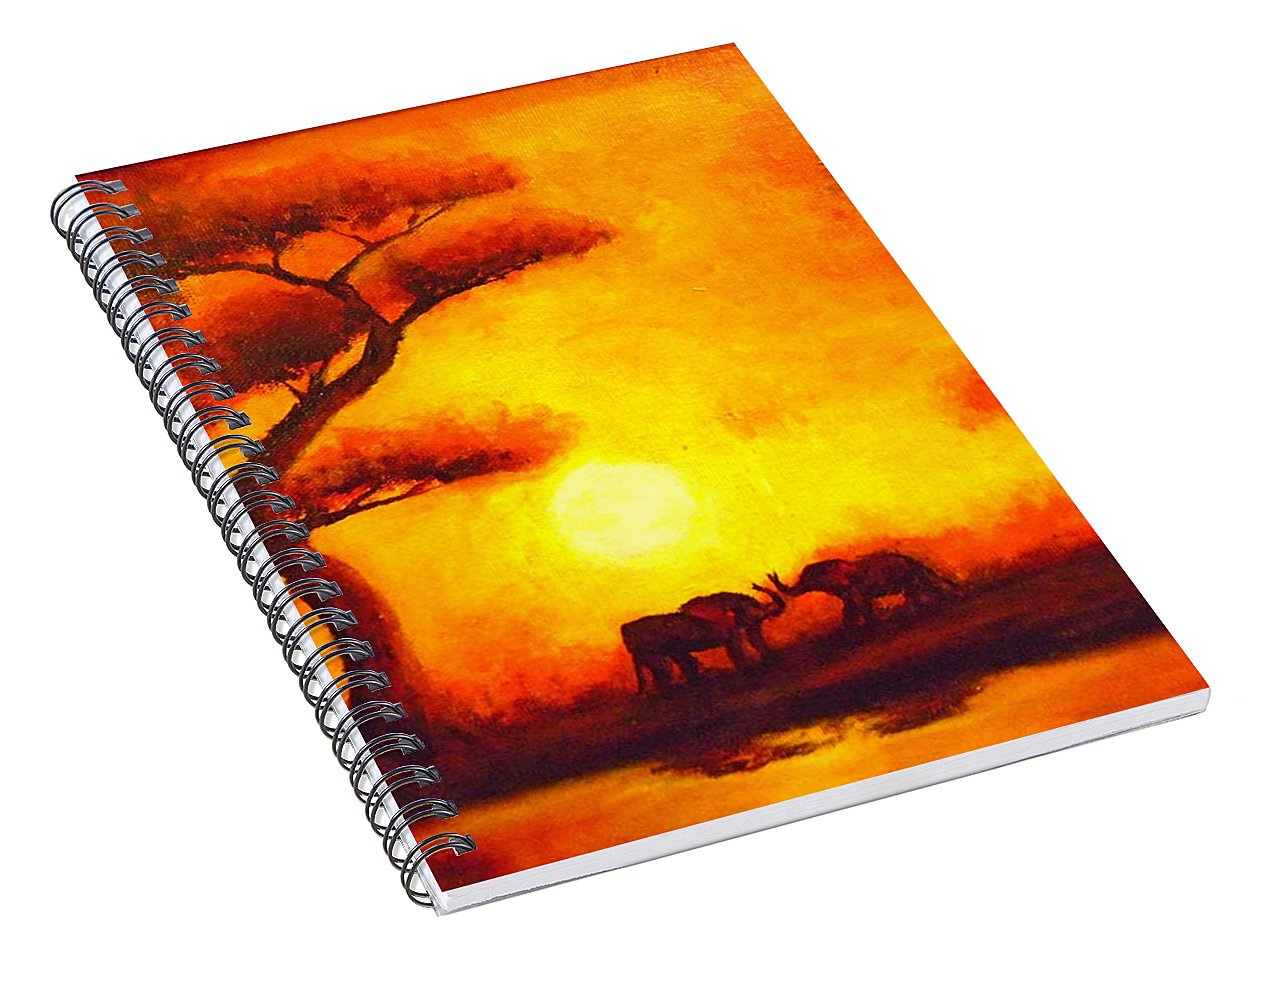 African Sunset  - Spiral Notebook